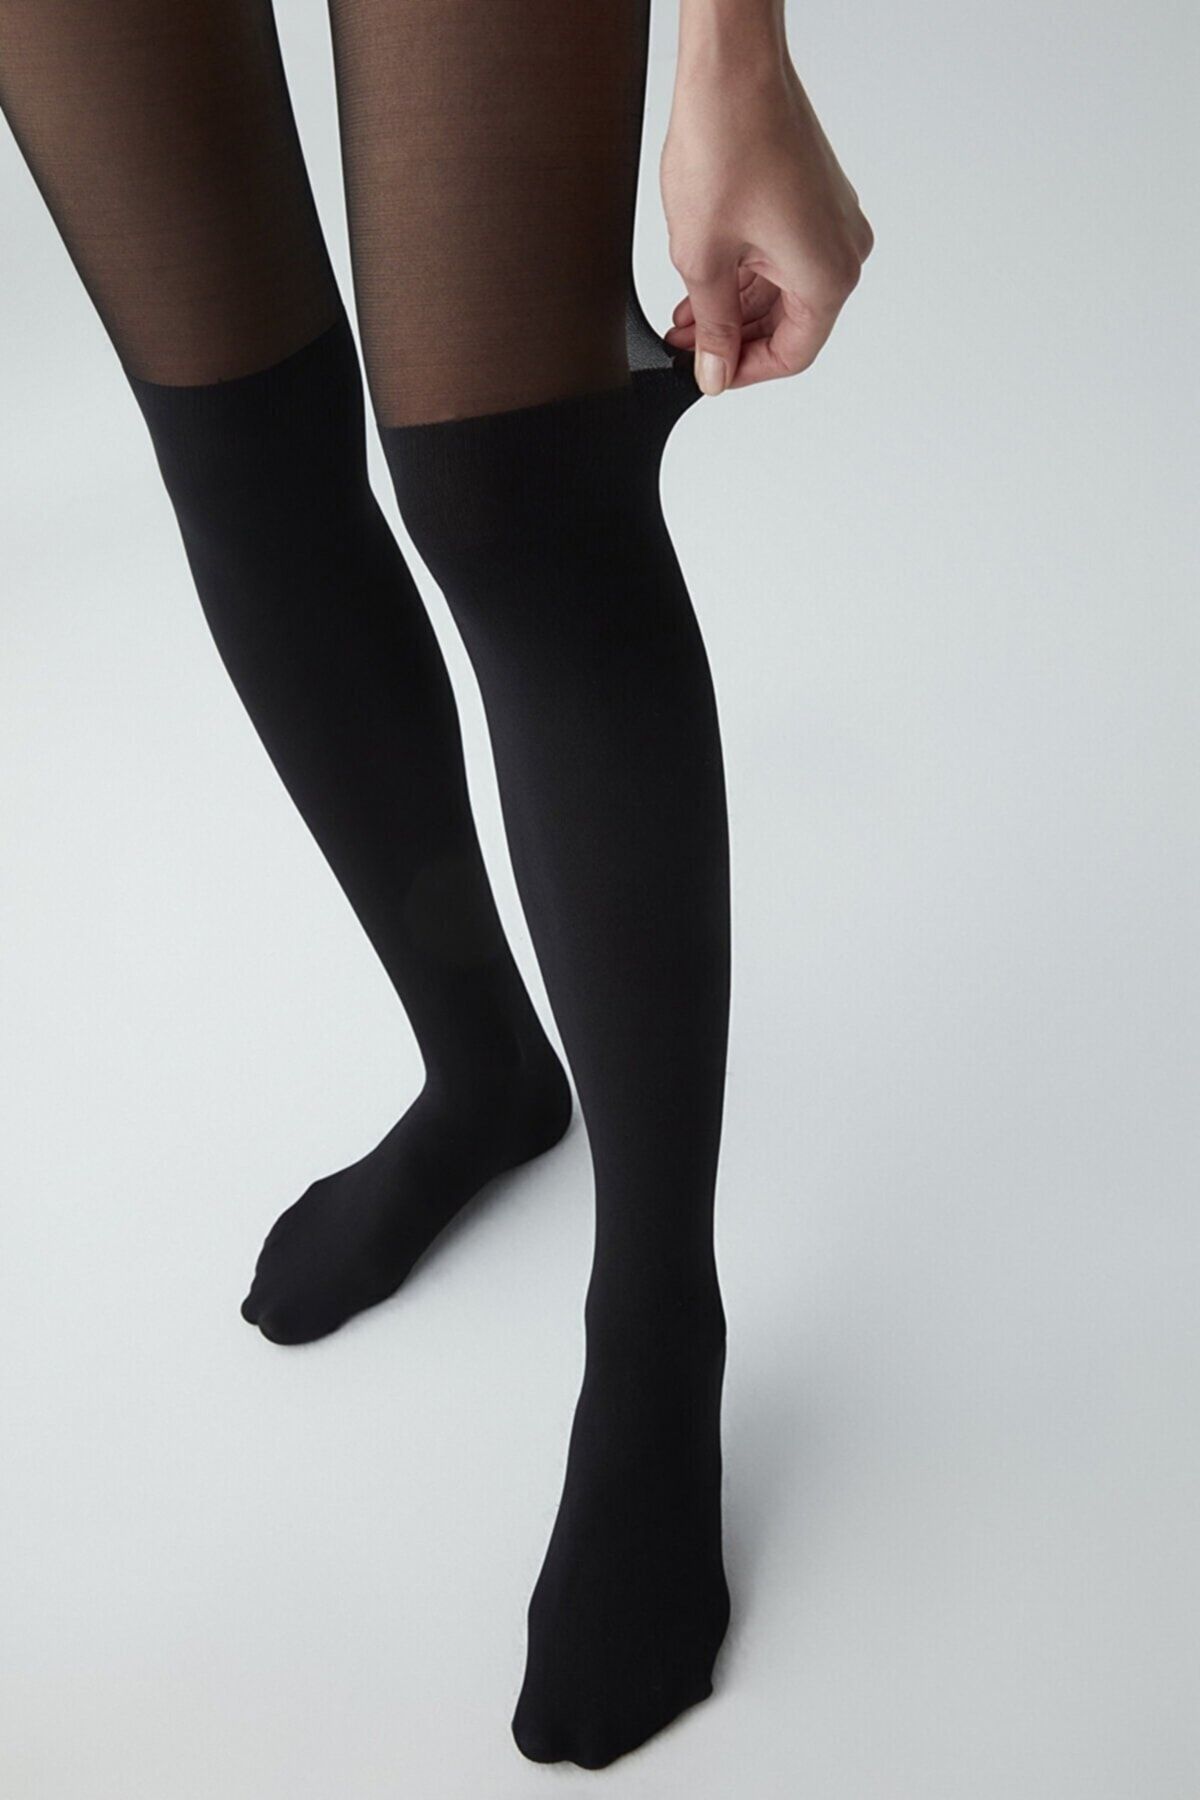 Penti Desenli Külotlu Çorap Çizme Çorabı 20 Denye siyah